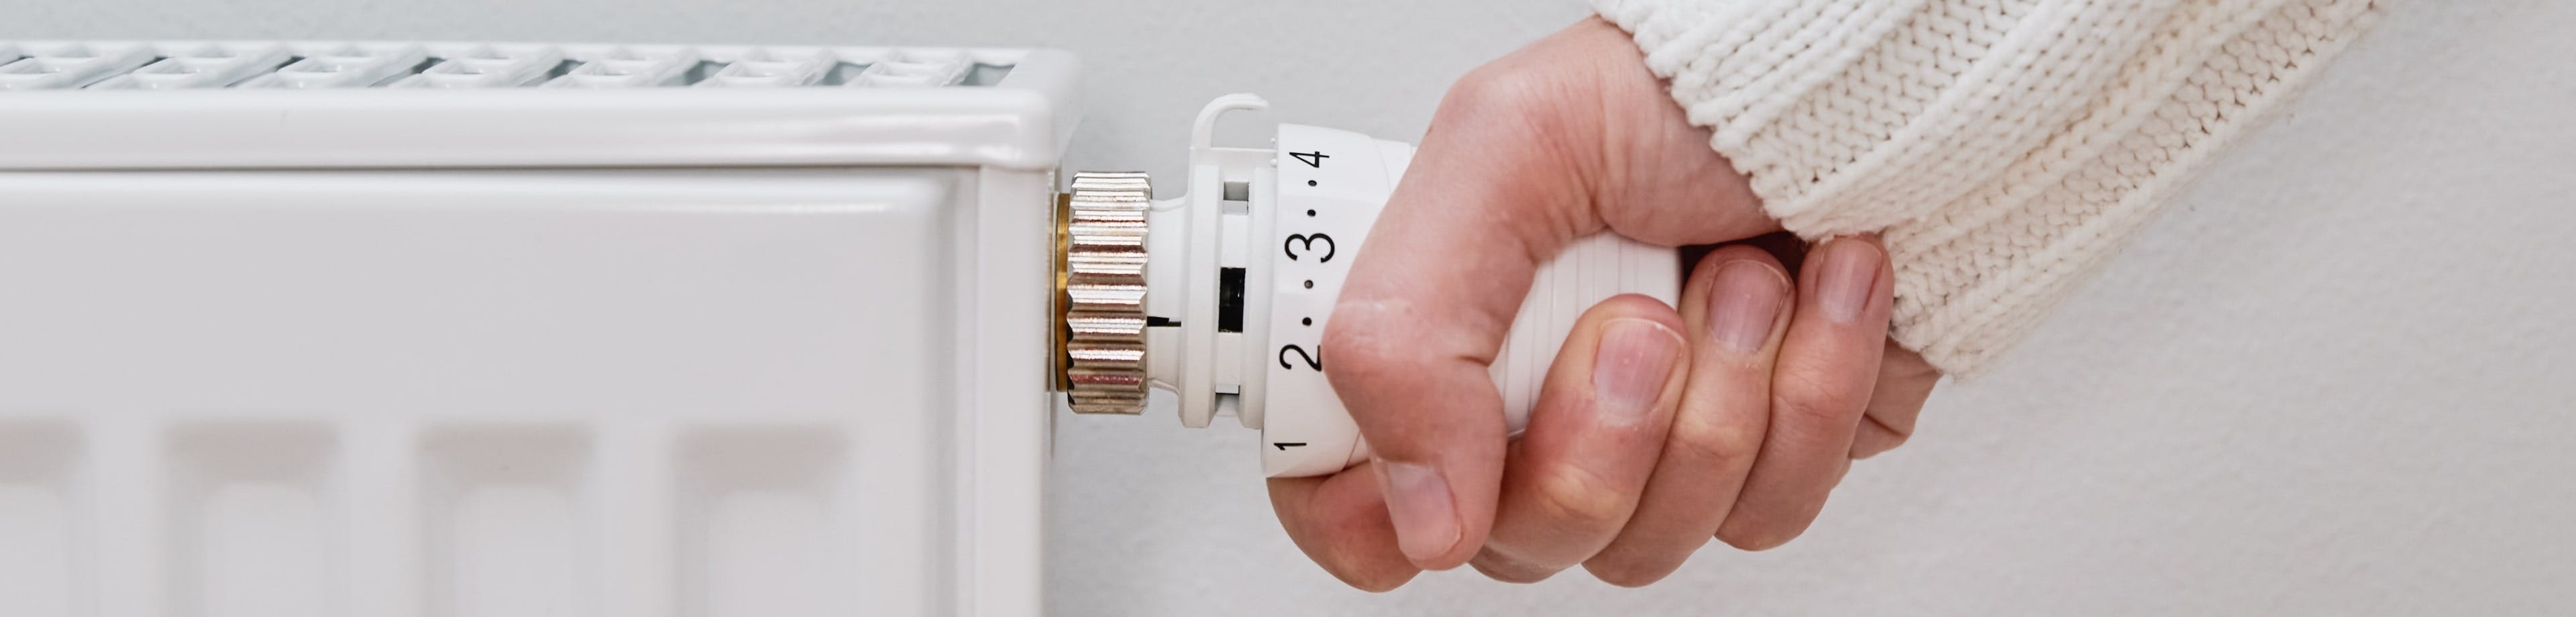 Iemand pakt met 1 hand de thermostaatknop van de radiator vast, om de verwarming hoger of lager te kunnen zetten.